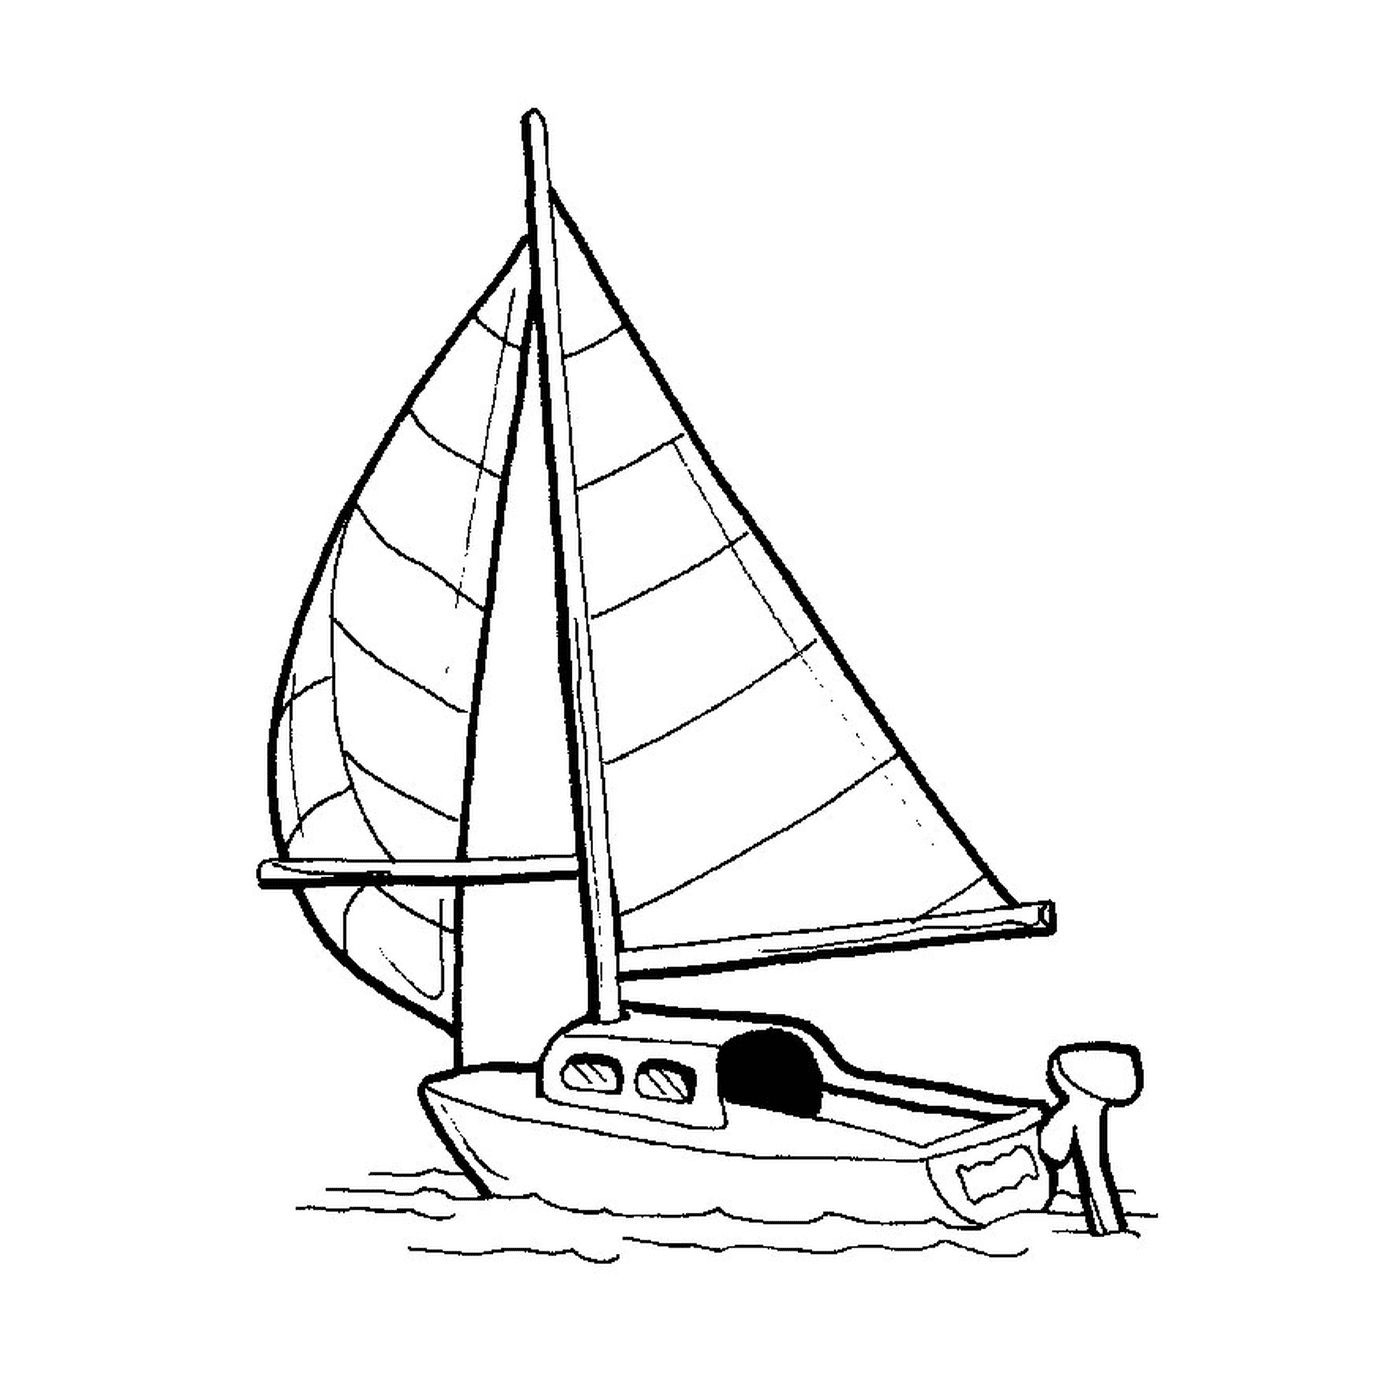  एक पाल - नाव को चित्र में दिखाया जाता है 